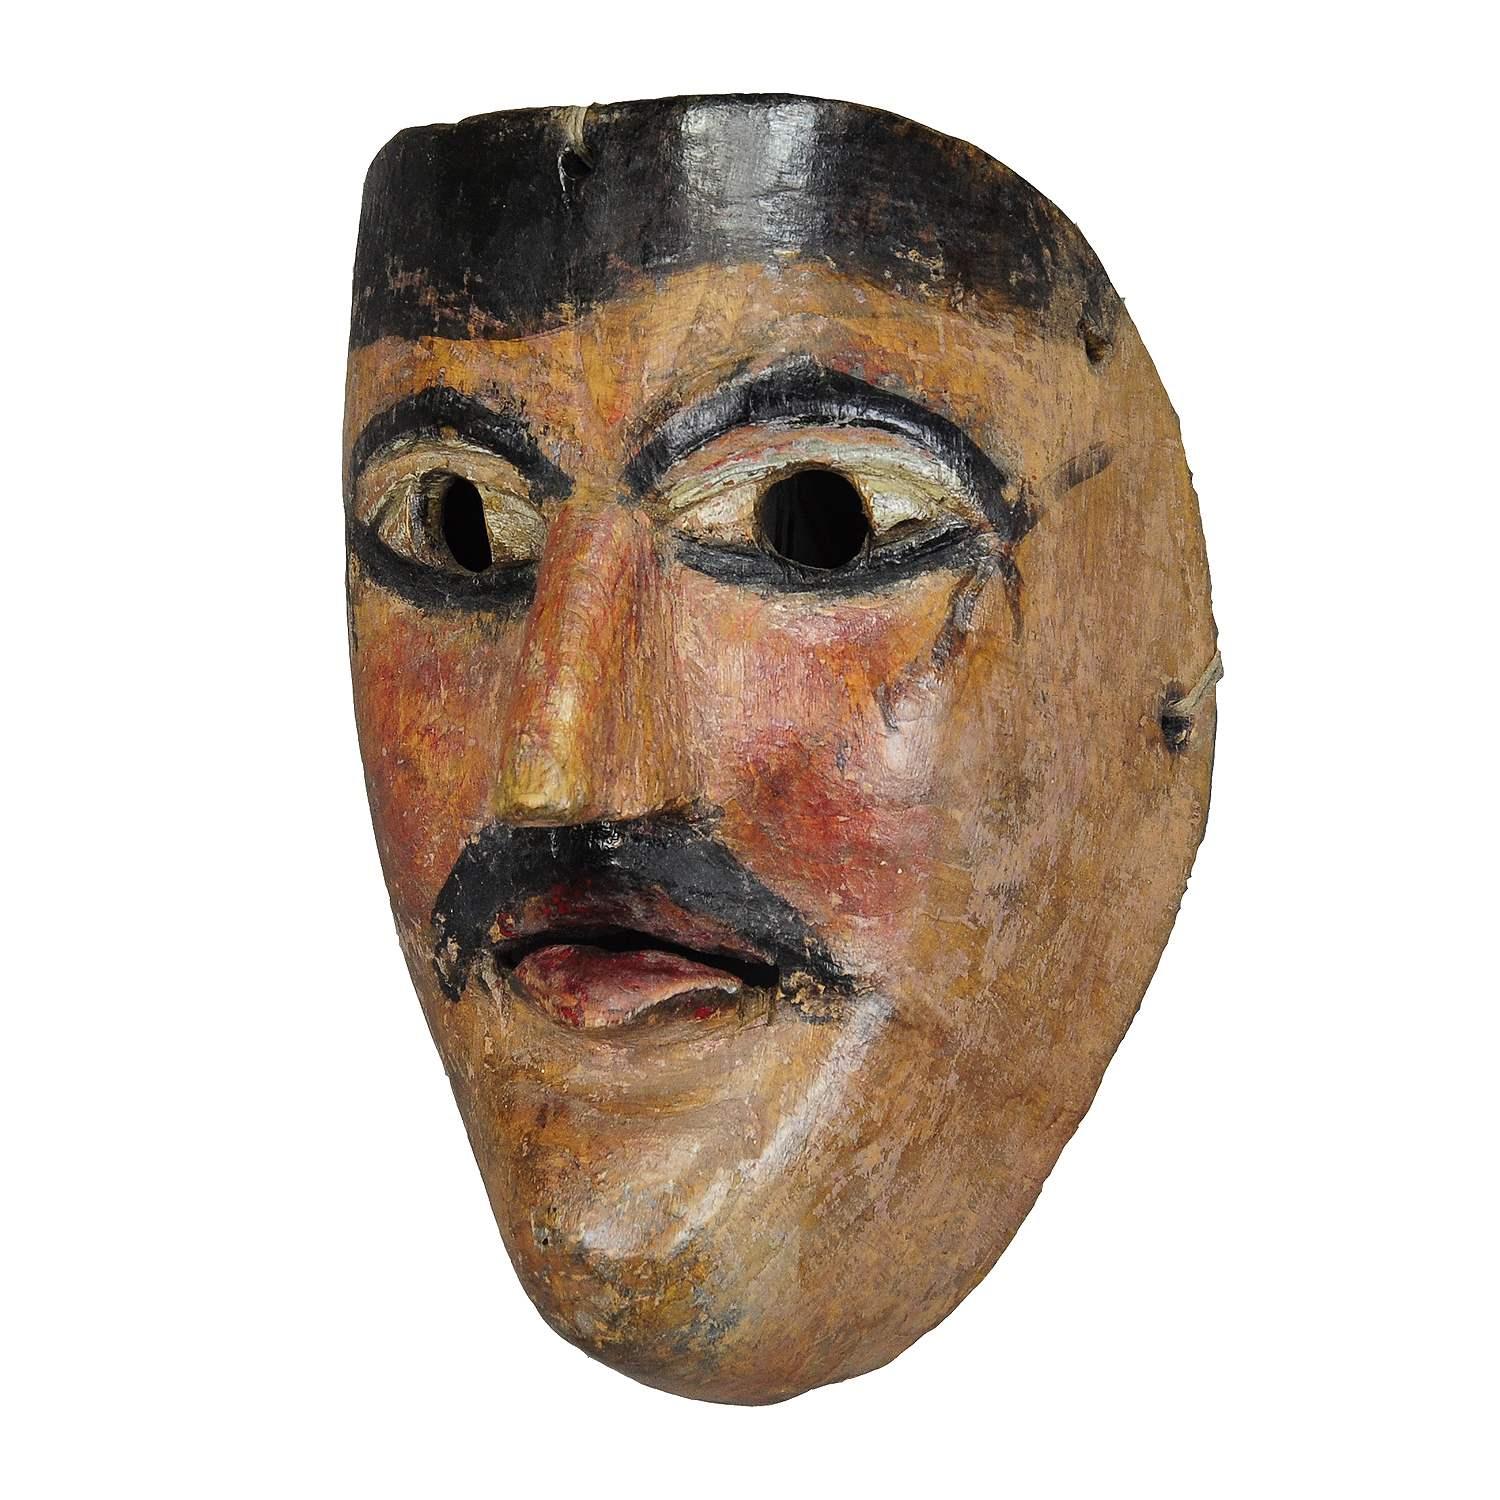 Joli masque de carnaval tyrolien Fasnet sculpté et peint

Masque de carnaval en bois de pin sculpté à la main, peint à la main, provenant de la région du South Antiques. Excecuté dans la première moitié du 20e siècle. Ces masques sont utilisés en